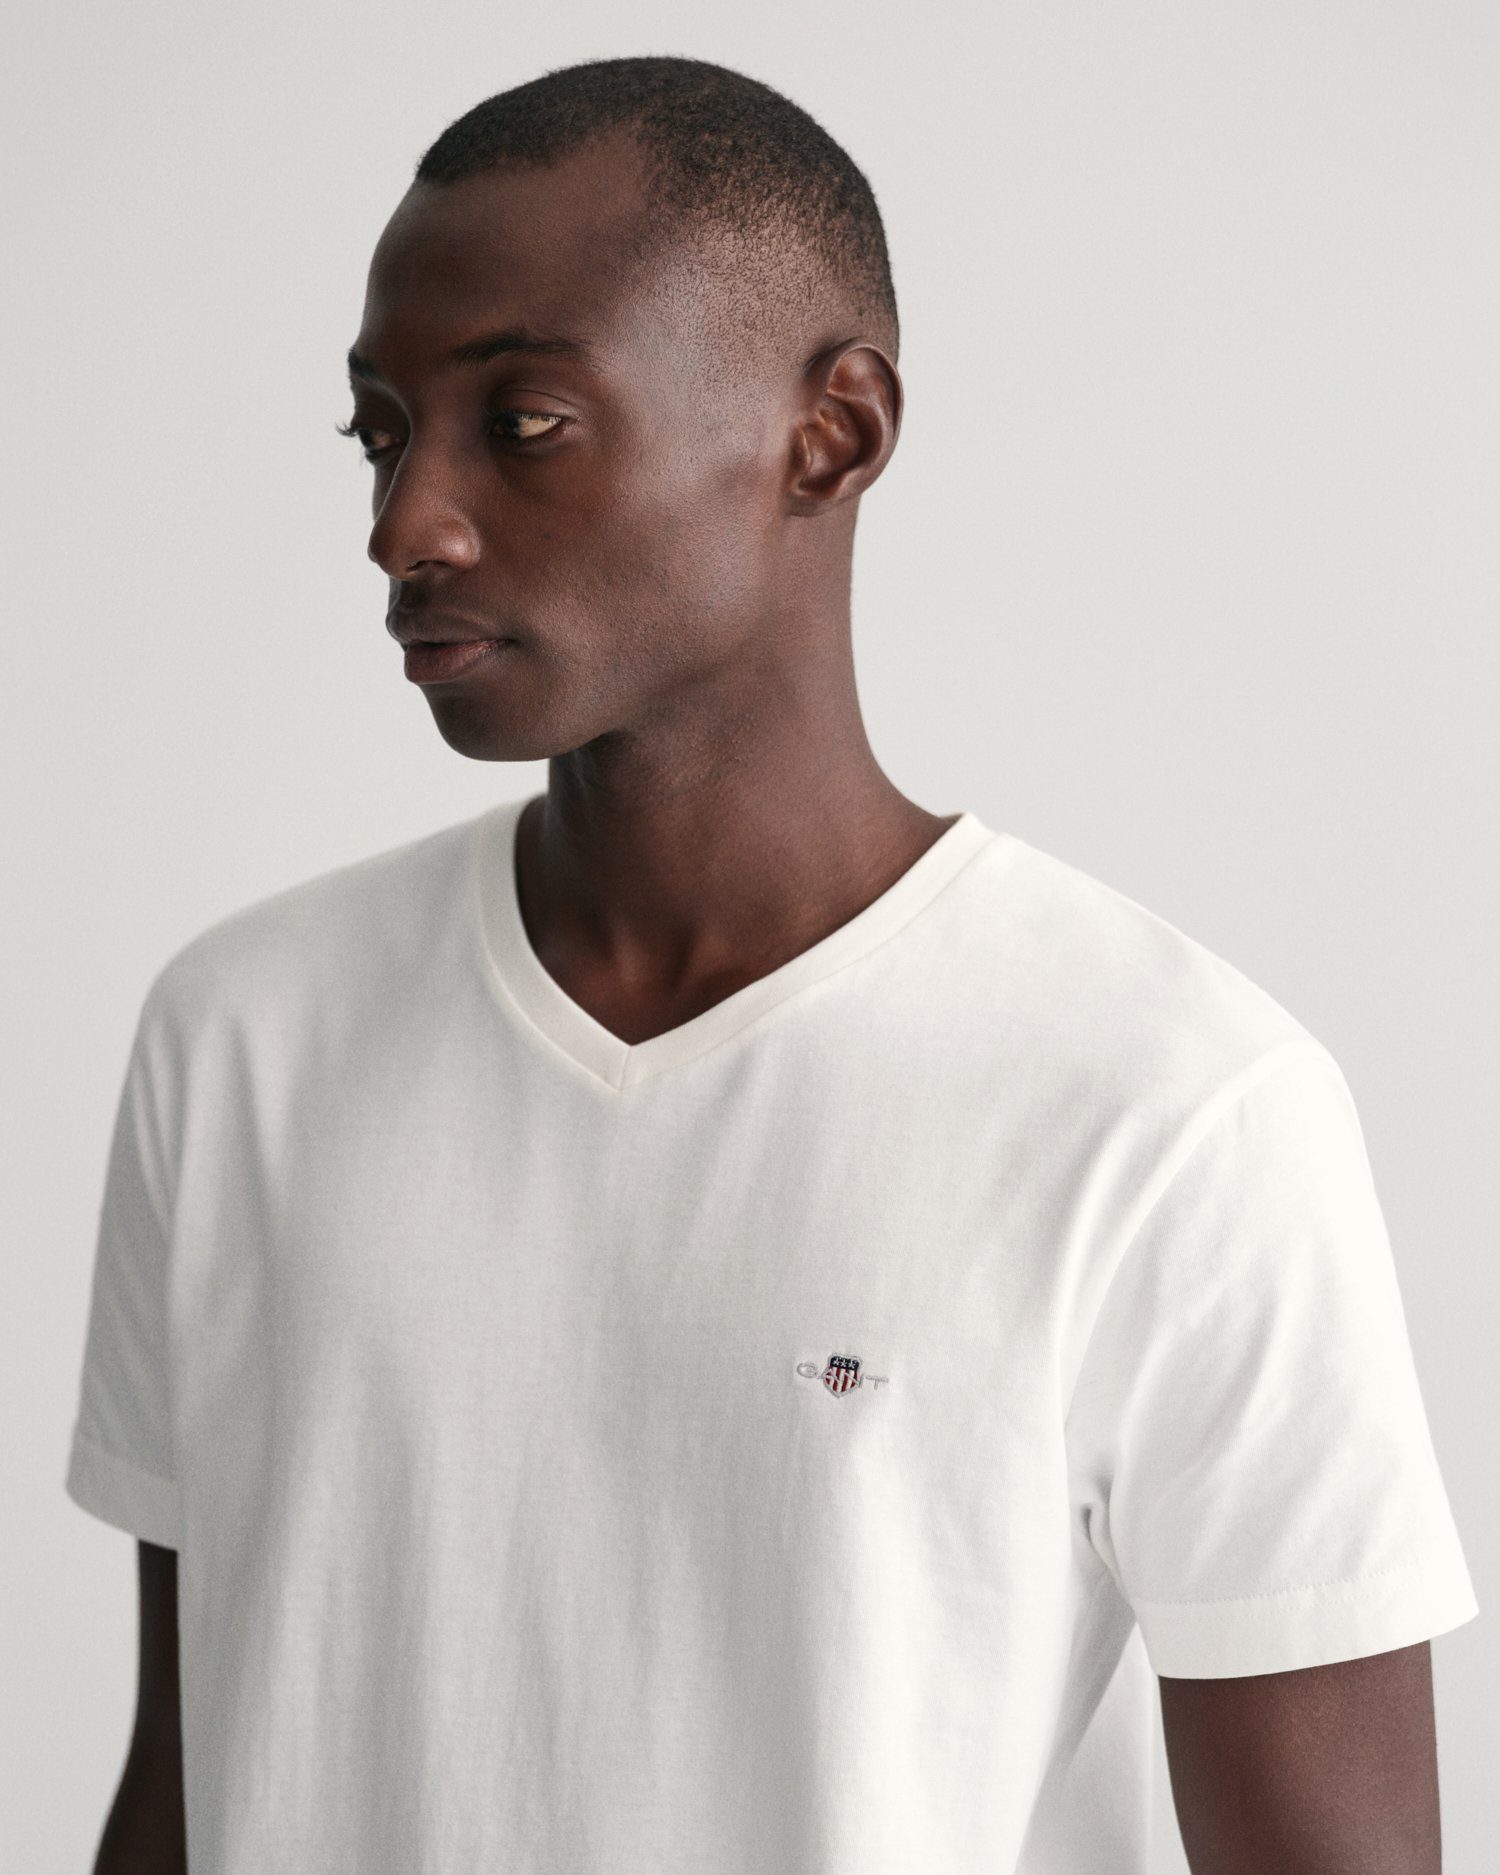 auf Gant white mit kleinen T-Shirt T-SHIRT der SLIM Logostickerei Brust einer V-NECK SHIELD